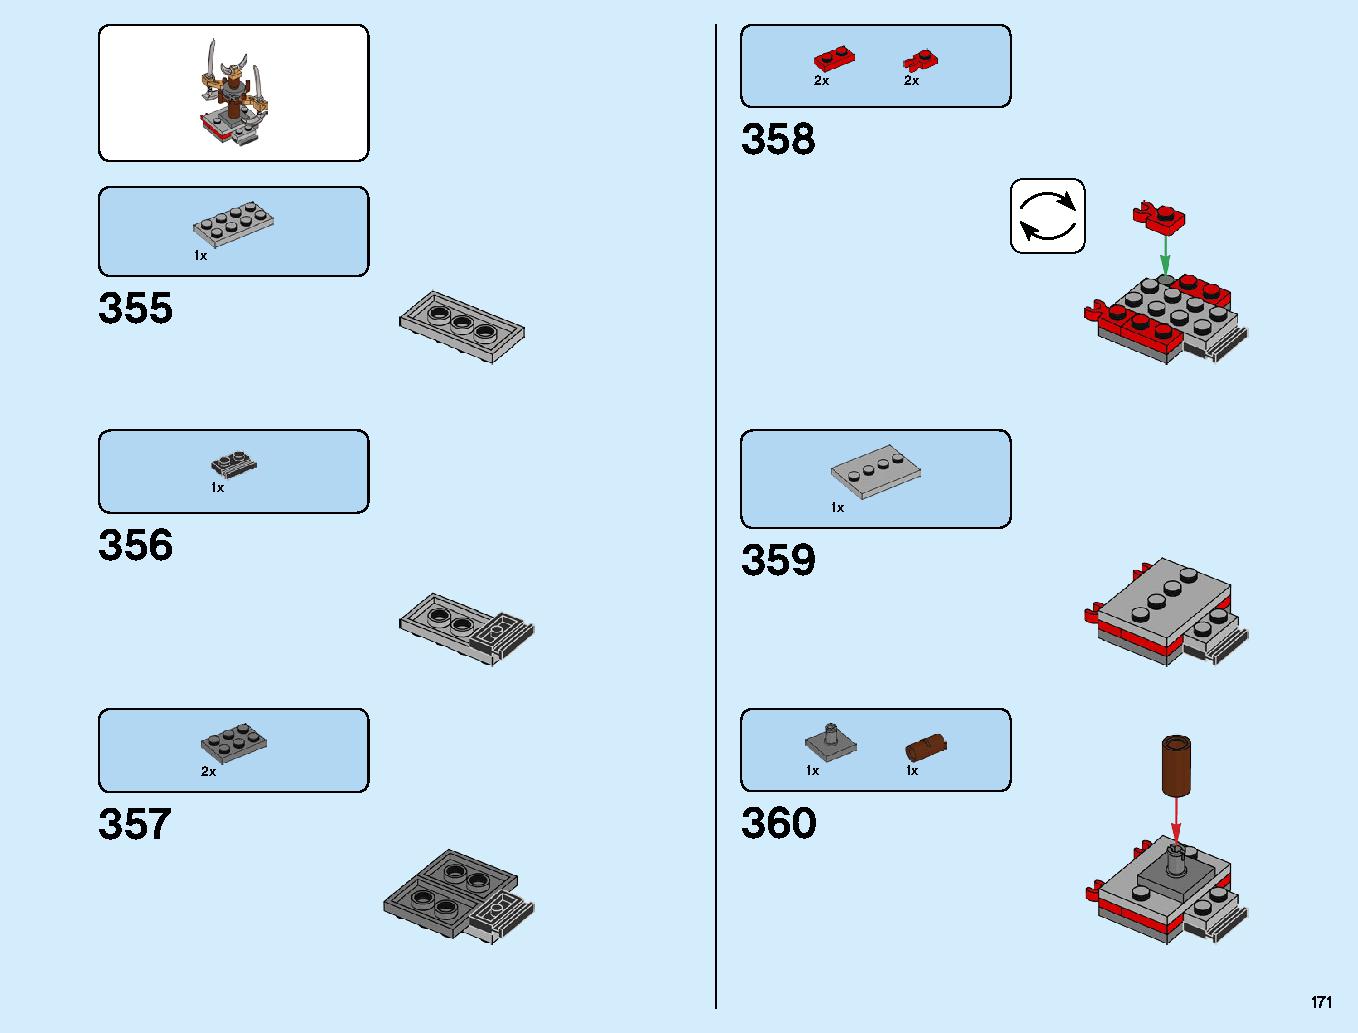 ニンジャ道場 70670 レゴの商品情報 レゴの説明書・組立方法 171 page